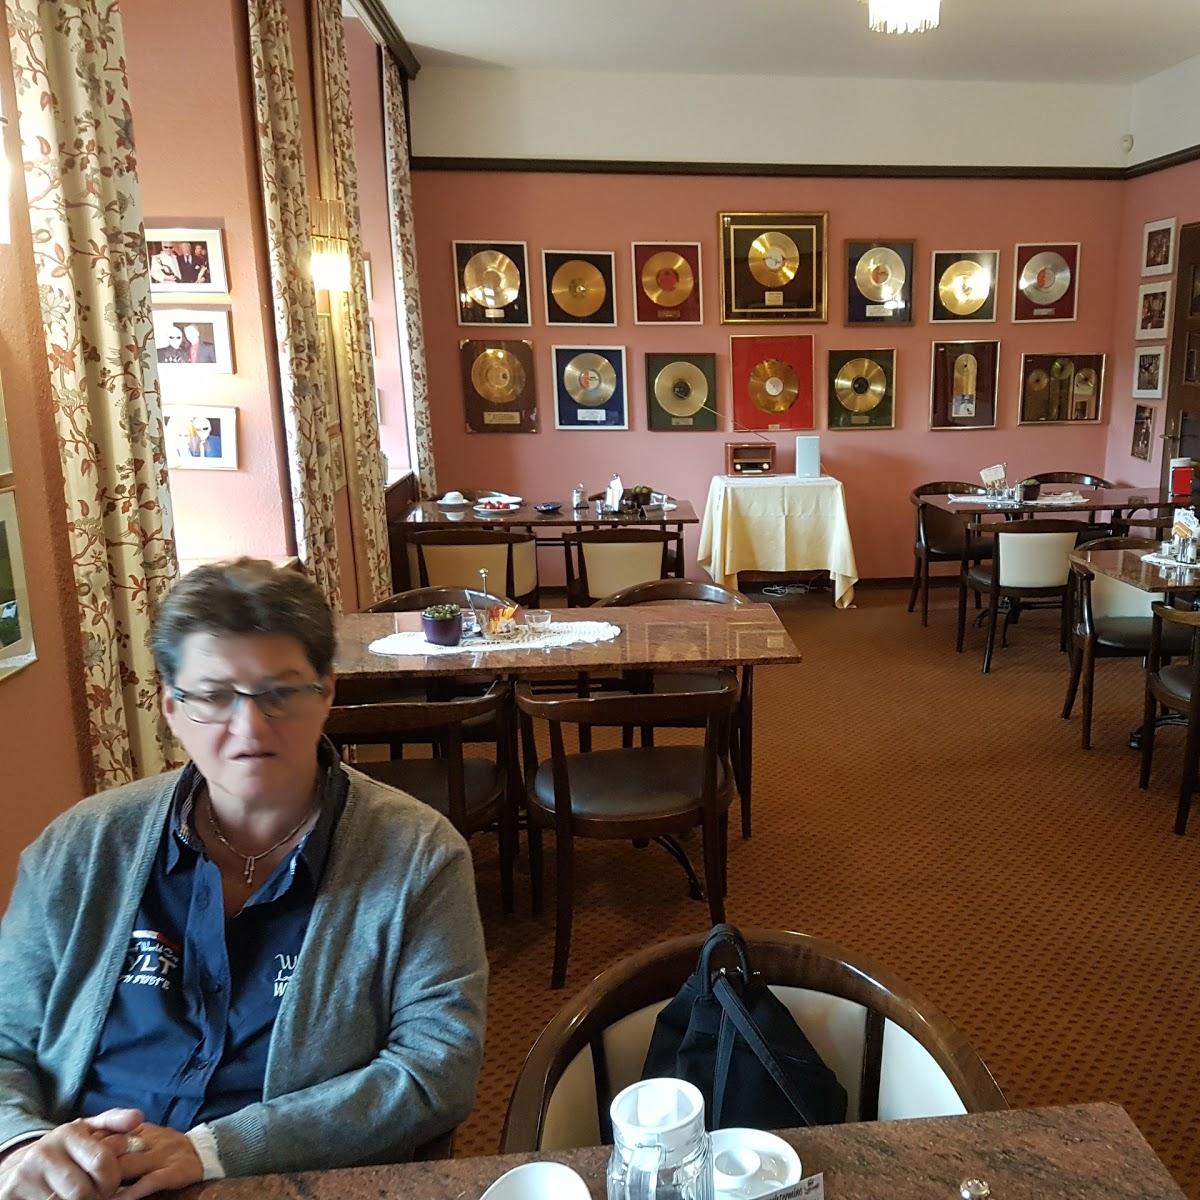 Restaurant "Historisches Kurhaus" in Bad Münstereifel